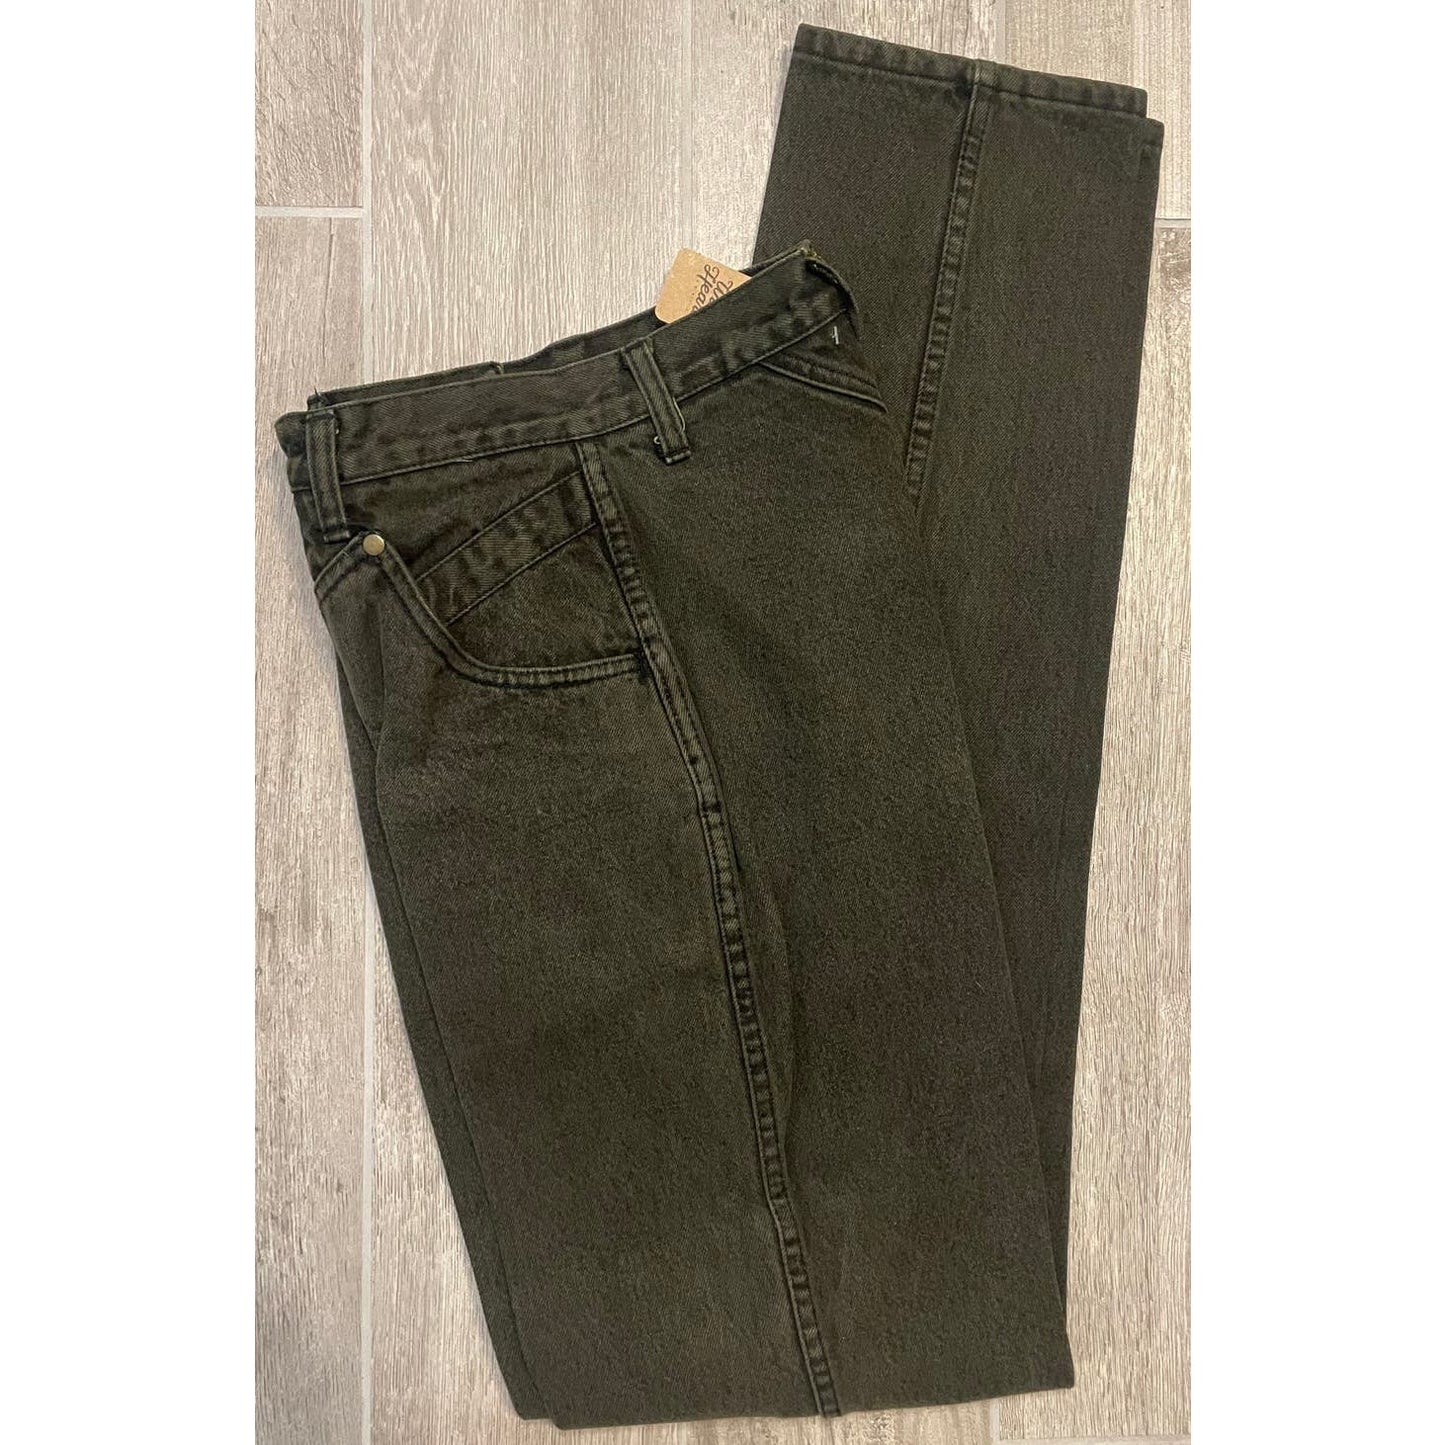 Vintage Blaze Olive Green Jeans